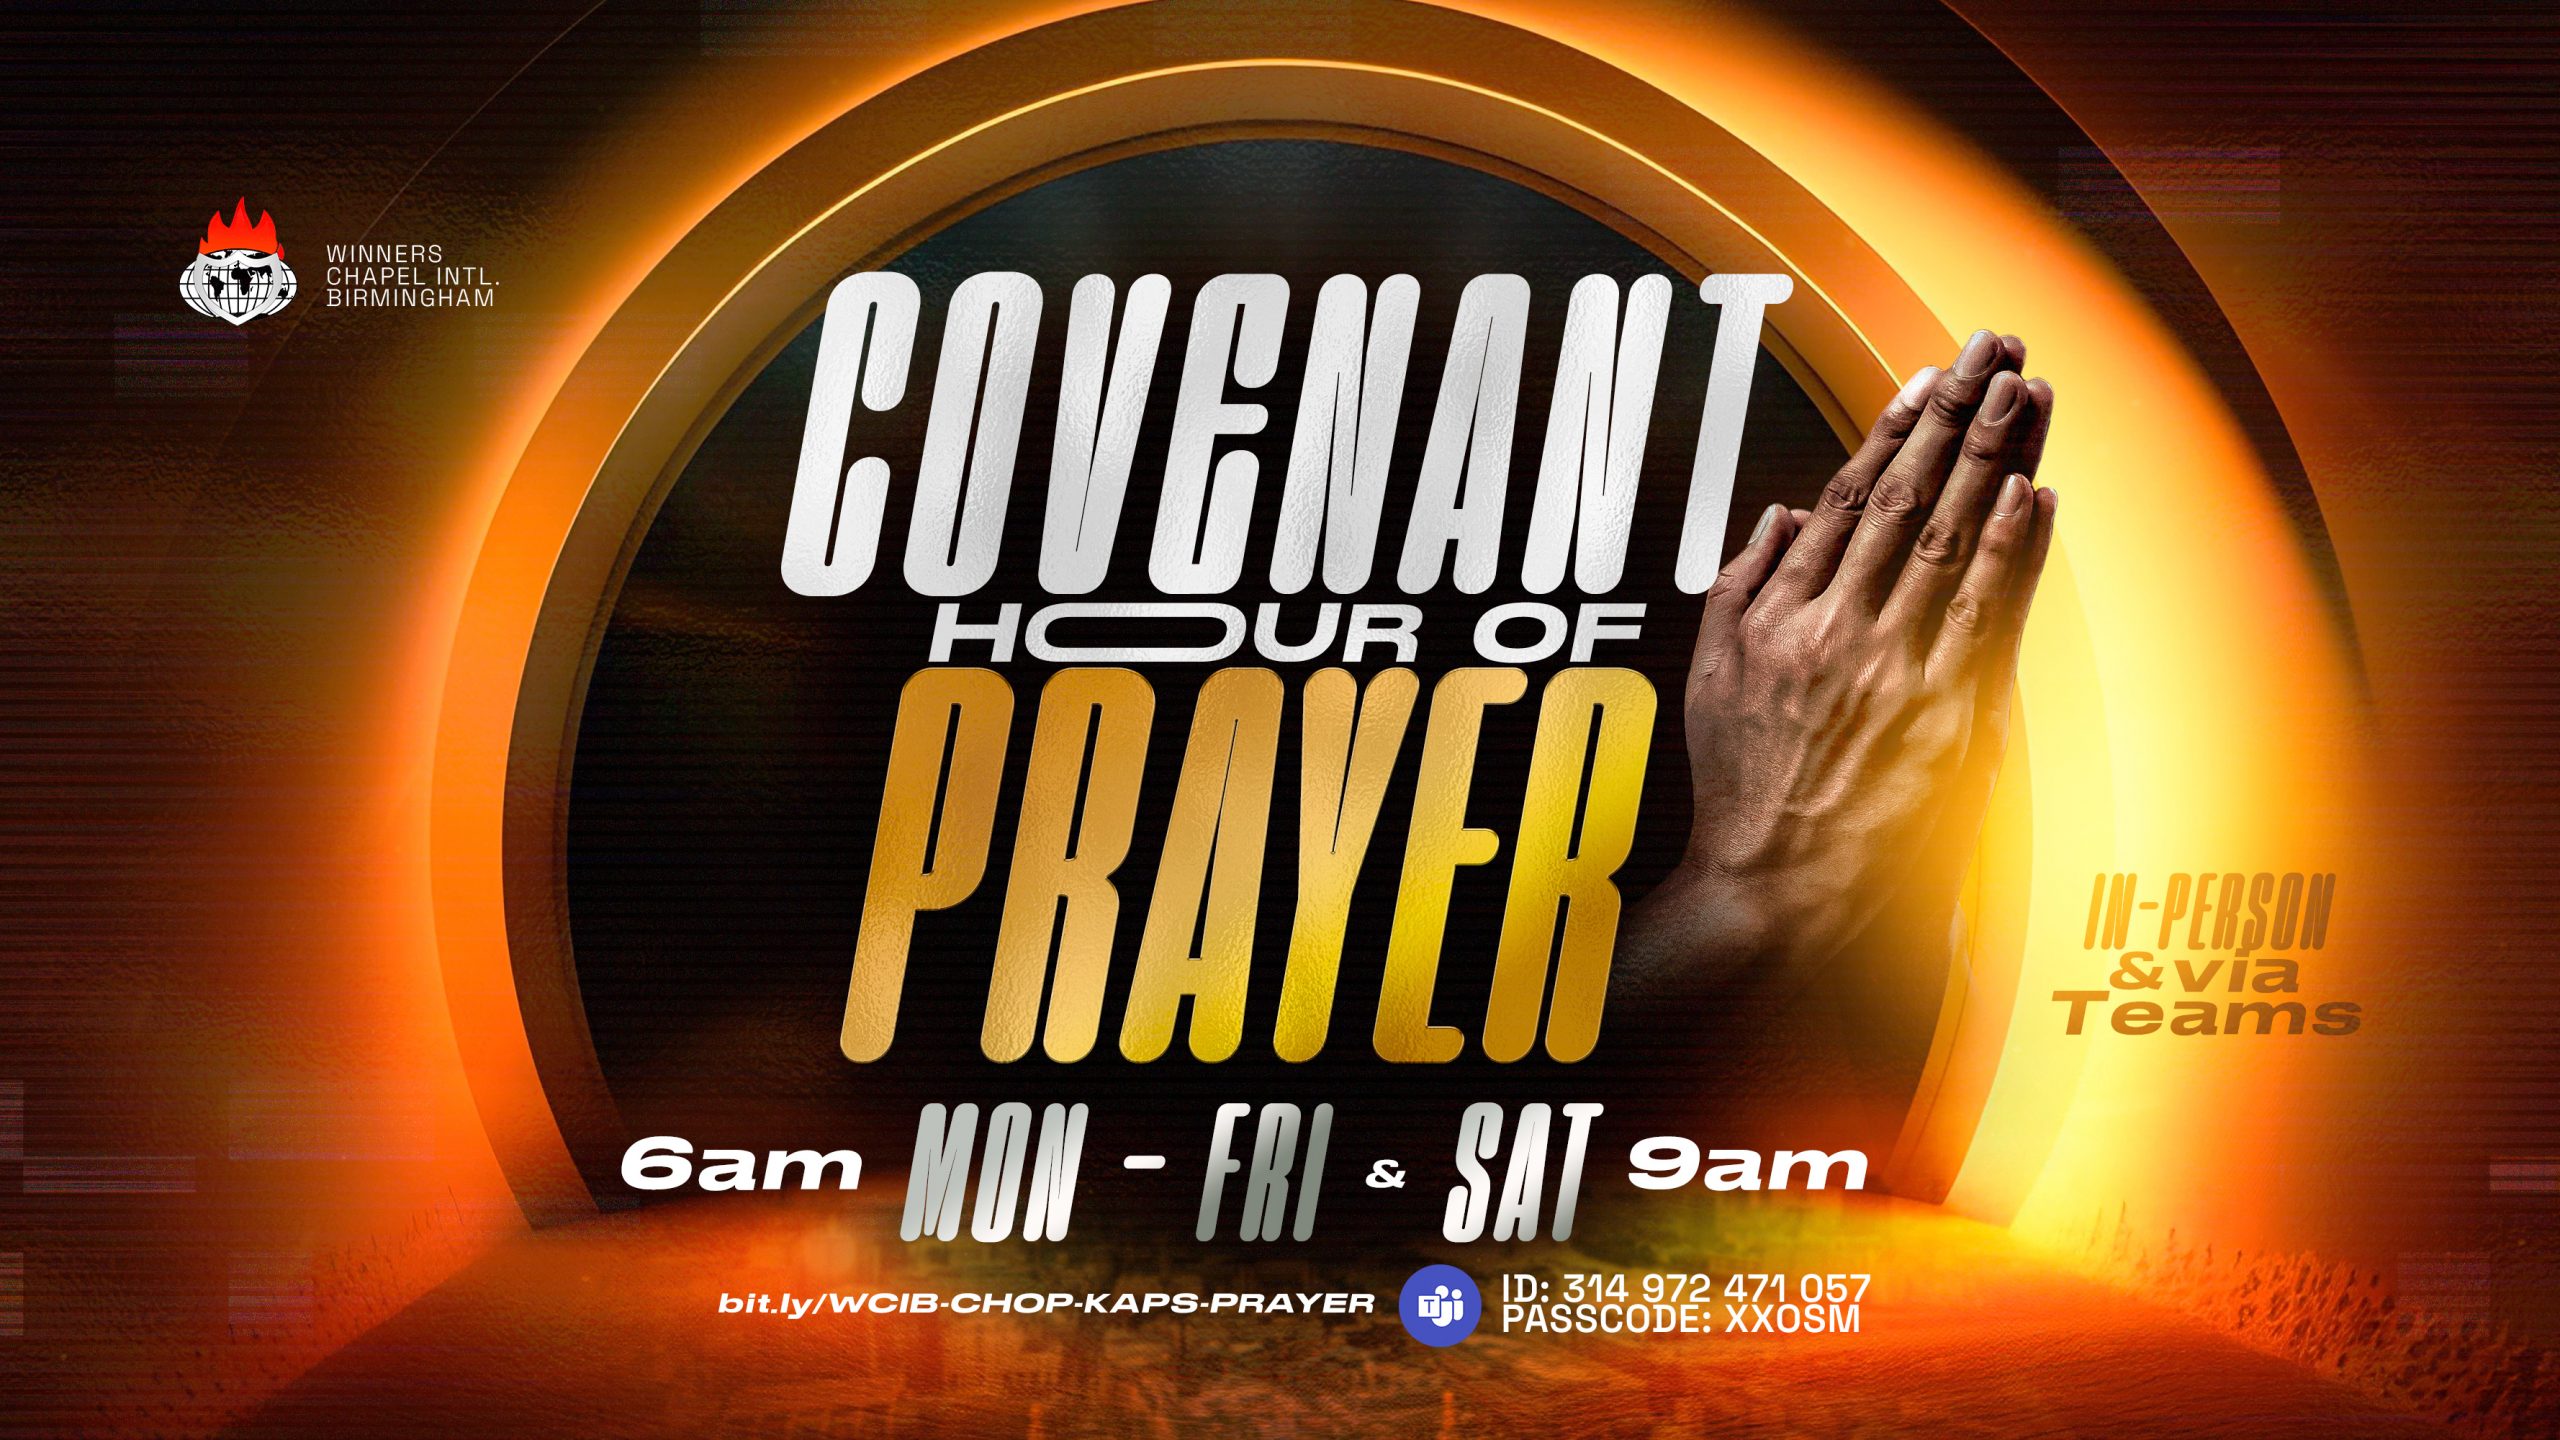 Covenant-Hour-Of-Prayer